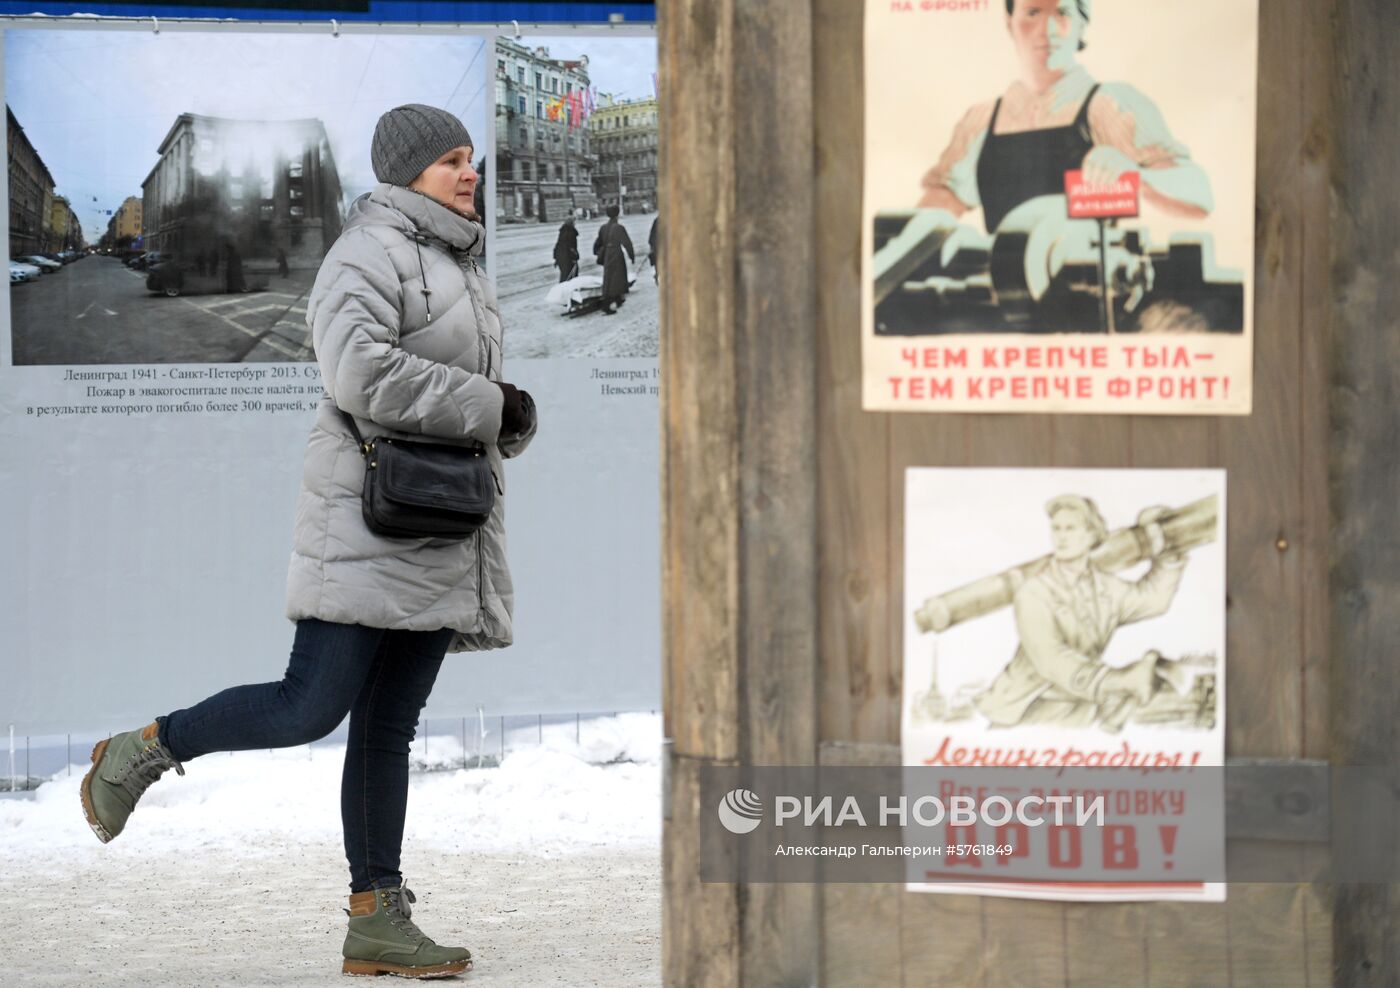 Акция памяти "Улица жизни" в Санкт-Петербурге